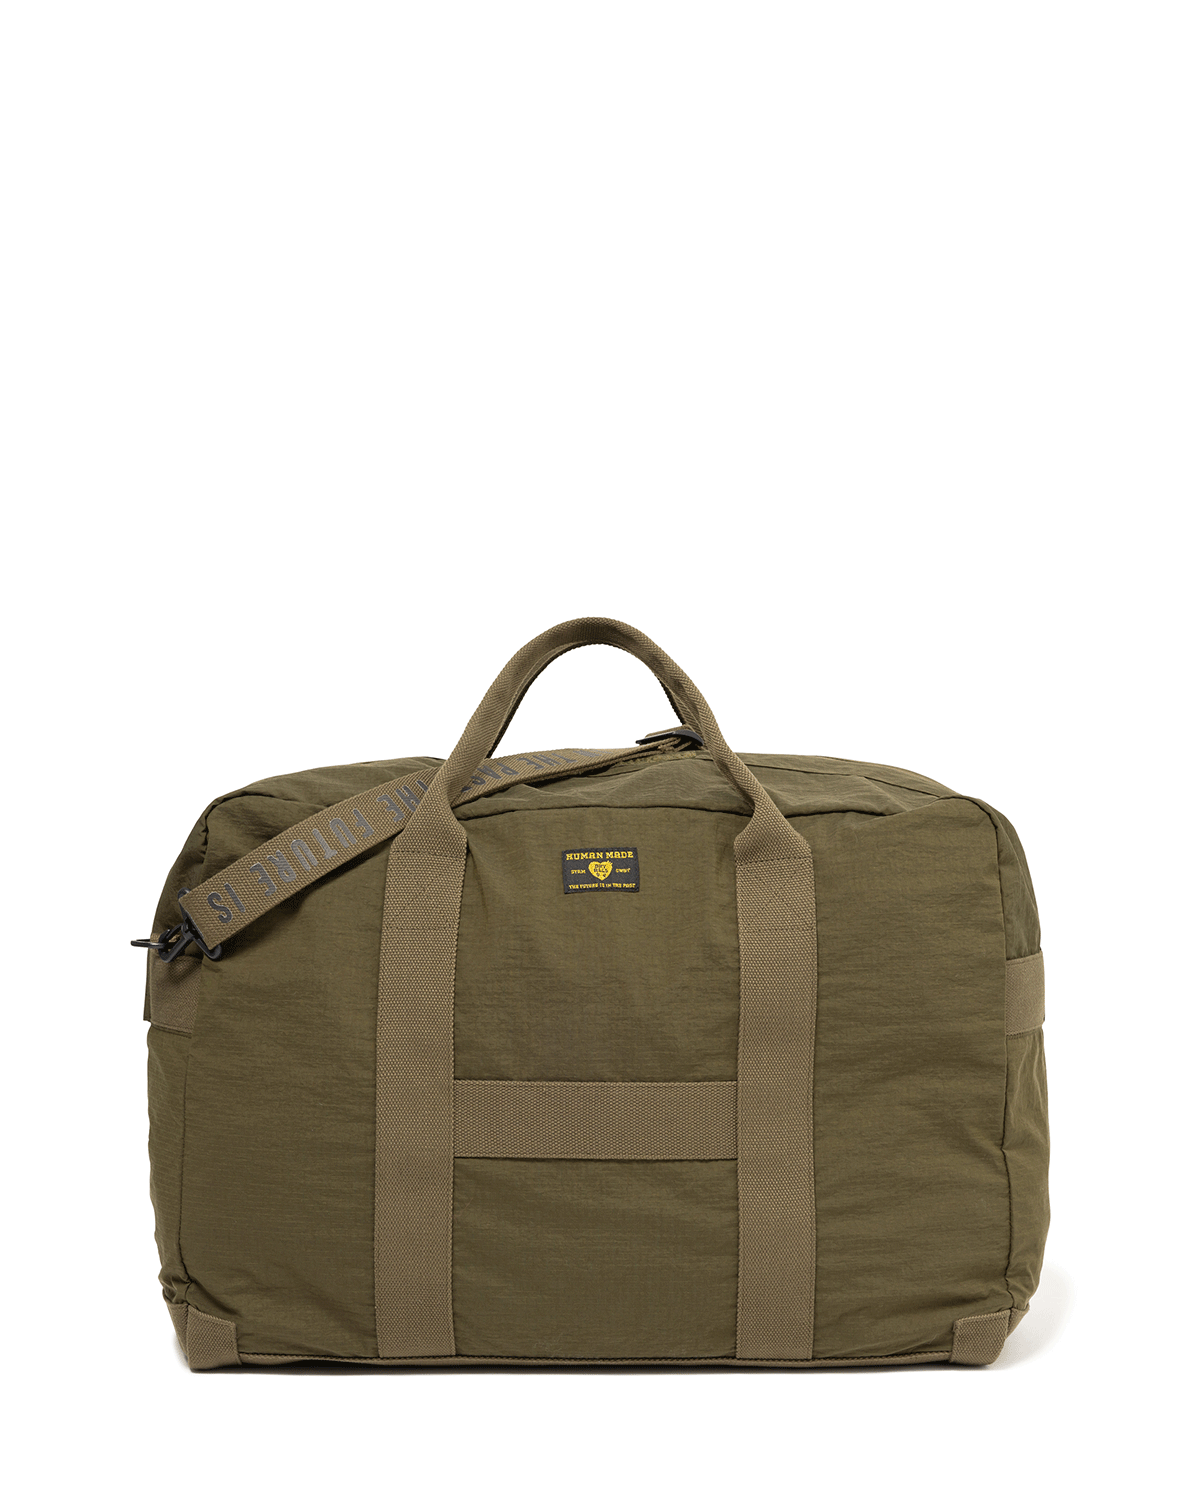 Human Made Military Carry Bag Olive Drab – LIKELIHOOD